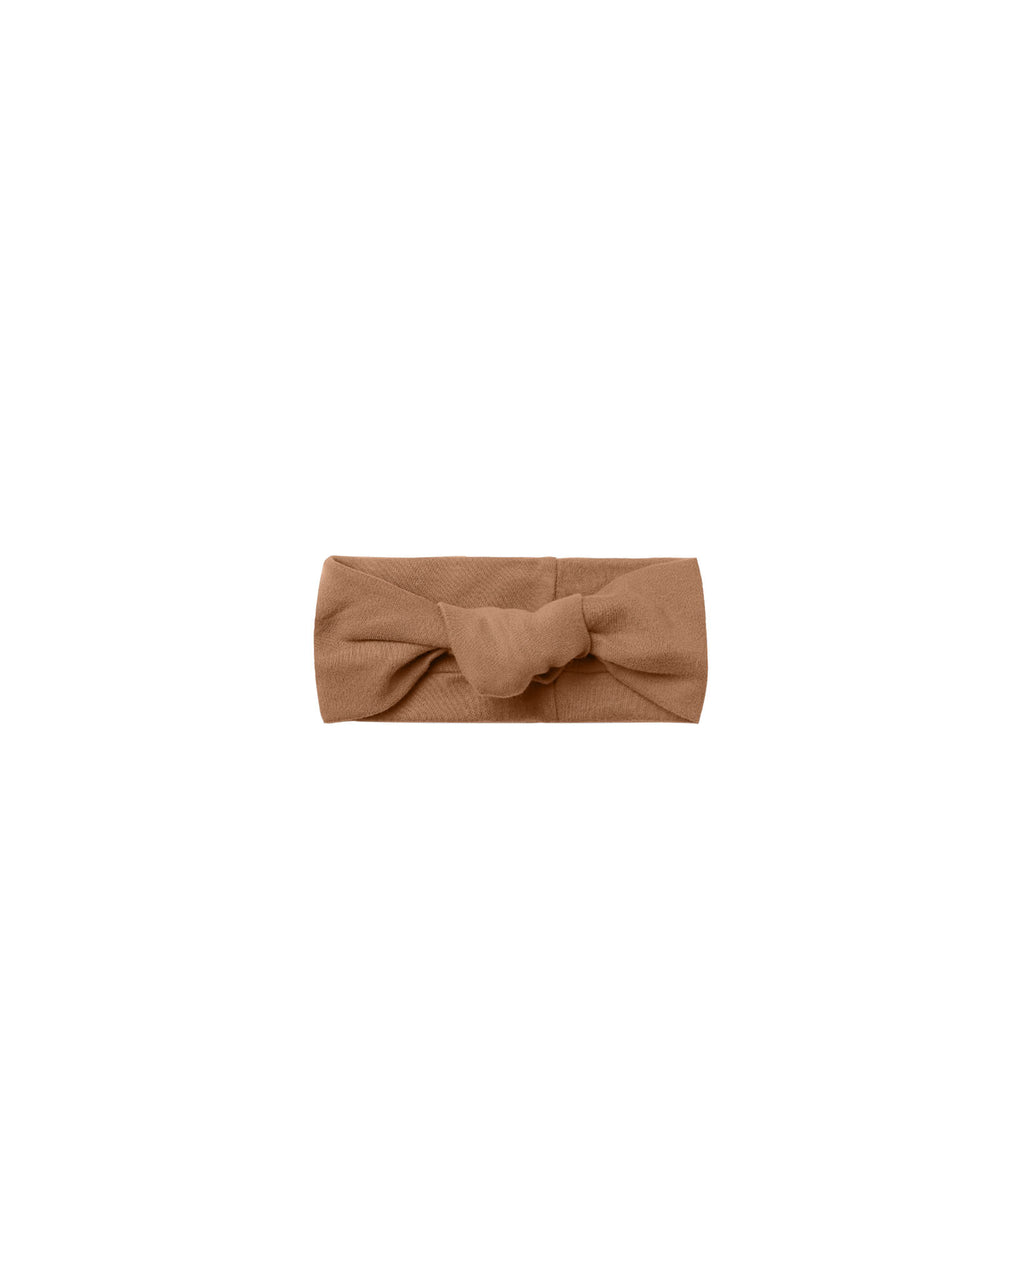 Knotted Headband - Cinnamon